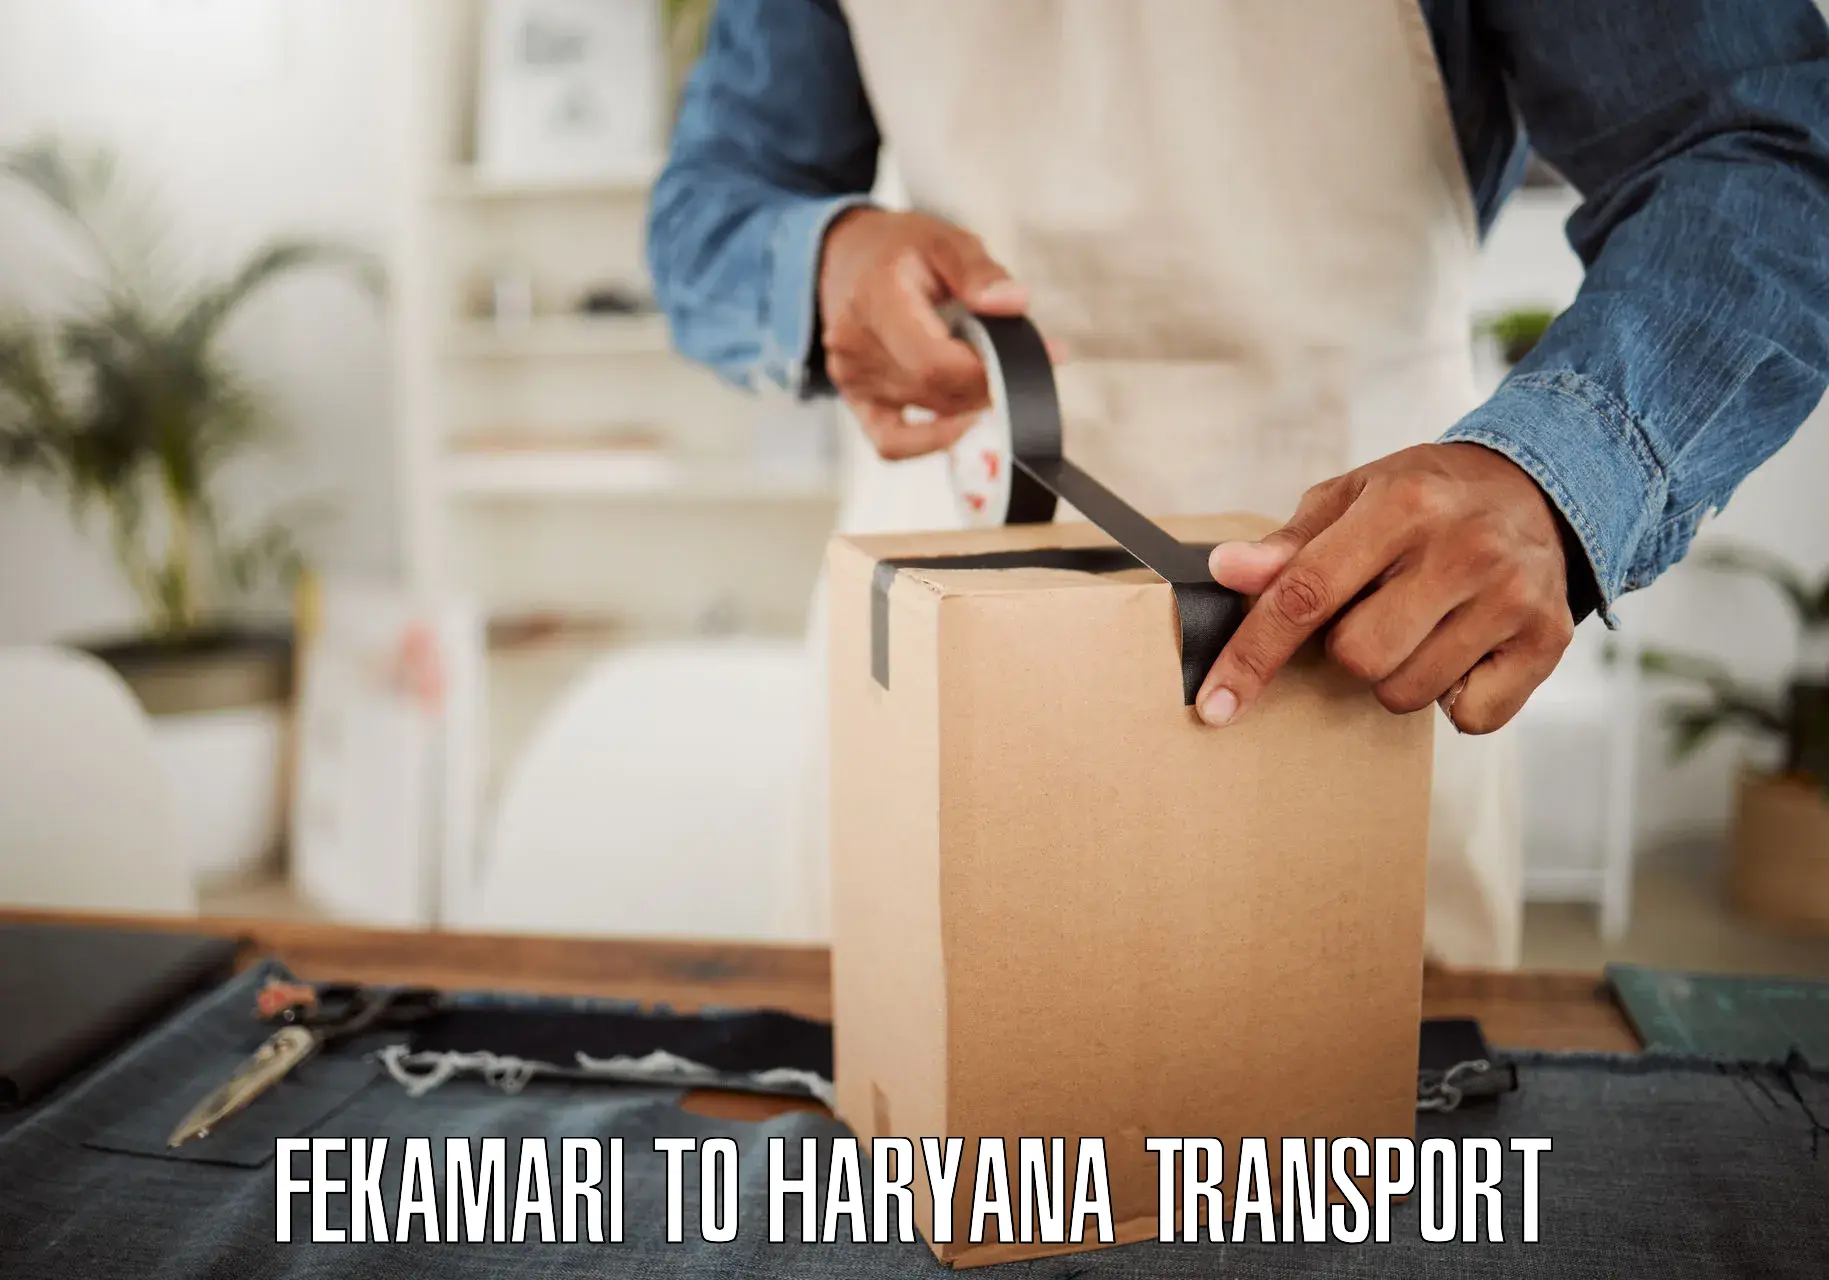 Two wheeler parcel service Fekamari to Chirya